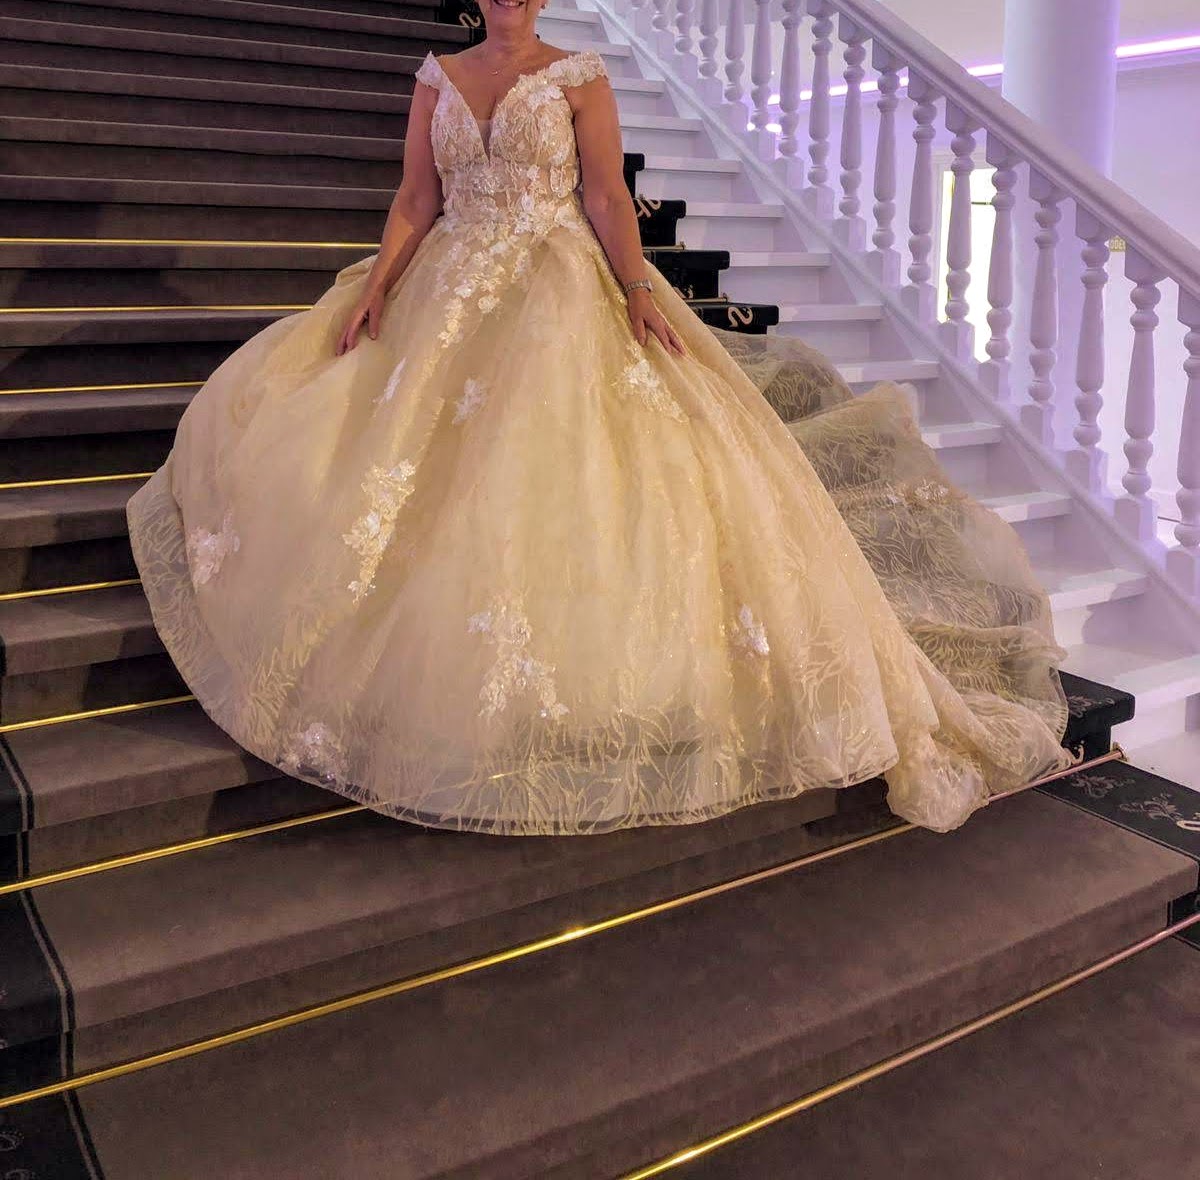 Overtreding Emotie opladen Gloednieuwe prinses trouwjurk niet gedragen ook niet vermaakt! - Wedding  Wonderland